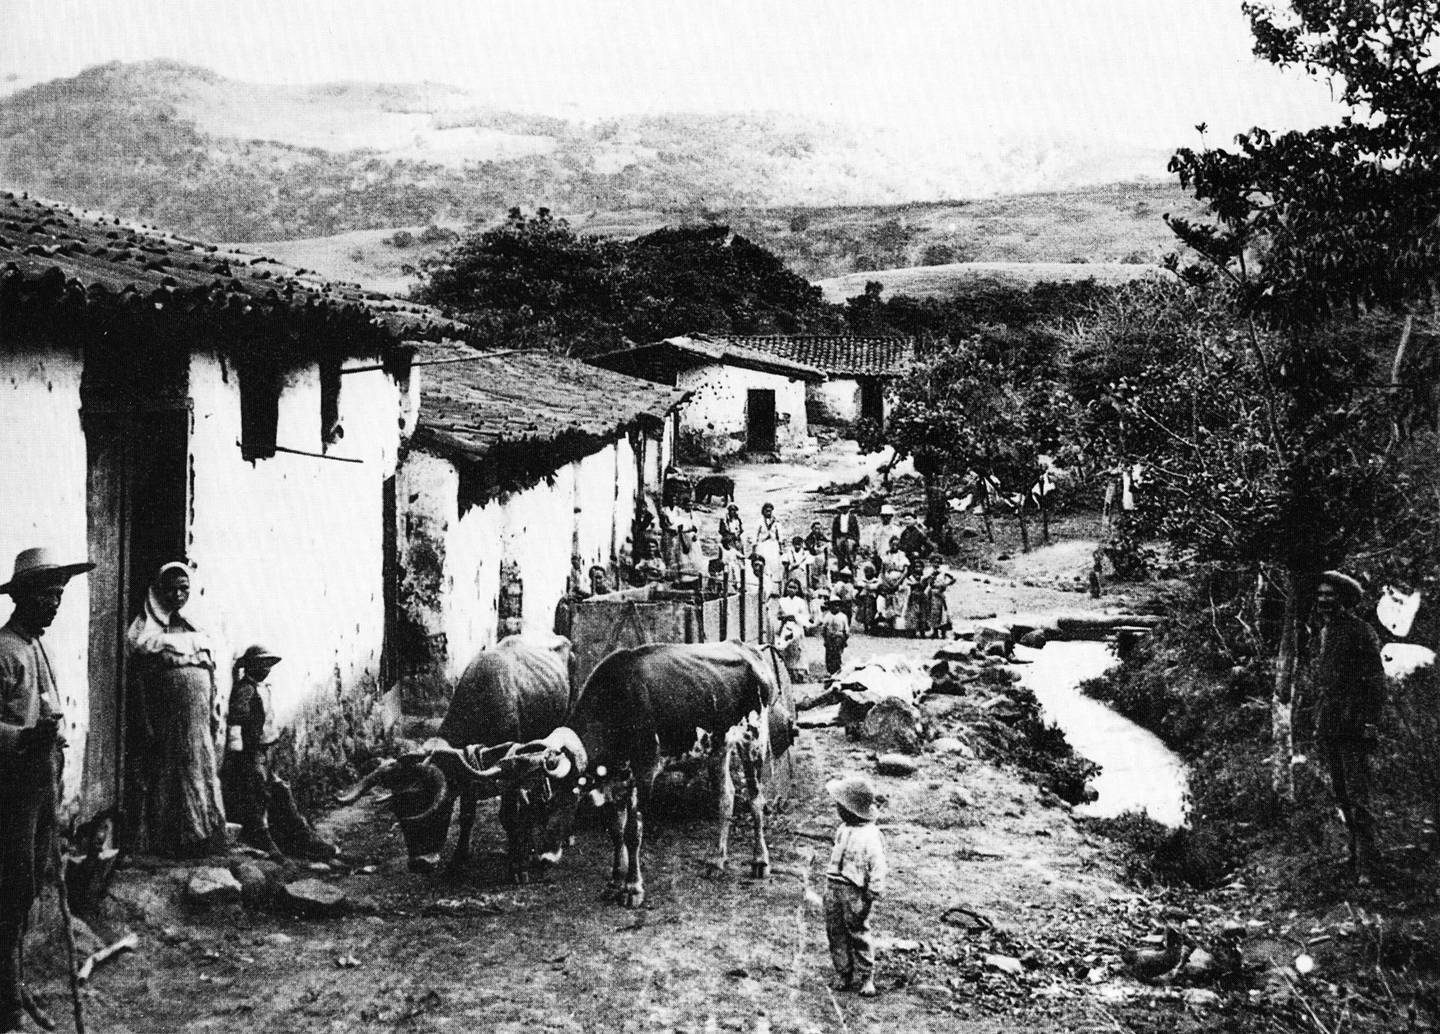 Vista de un arrabal josefino, a inicios de la década de 1890.
Fotografía de Henry G. Morgan. Andrés Fdez para LN. .